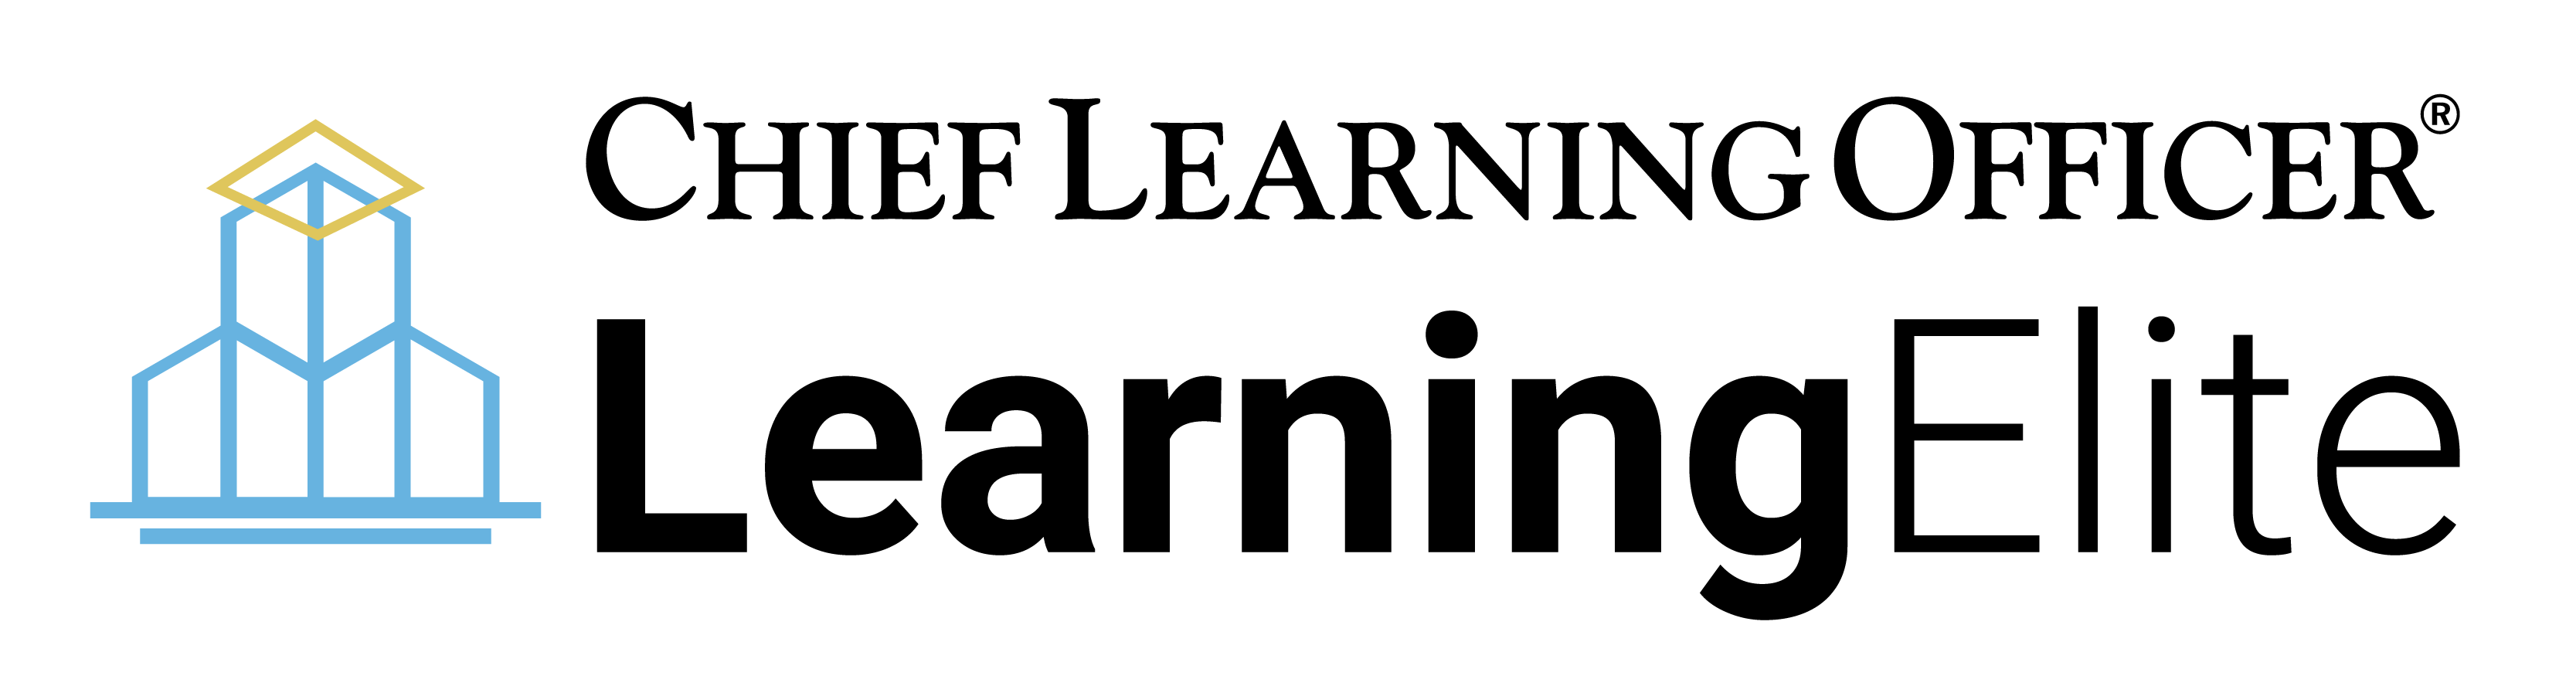 LearningElite Awards